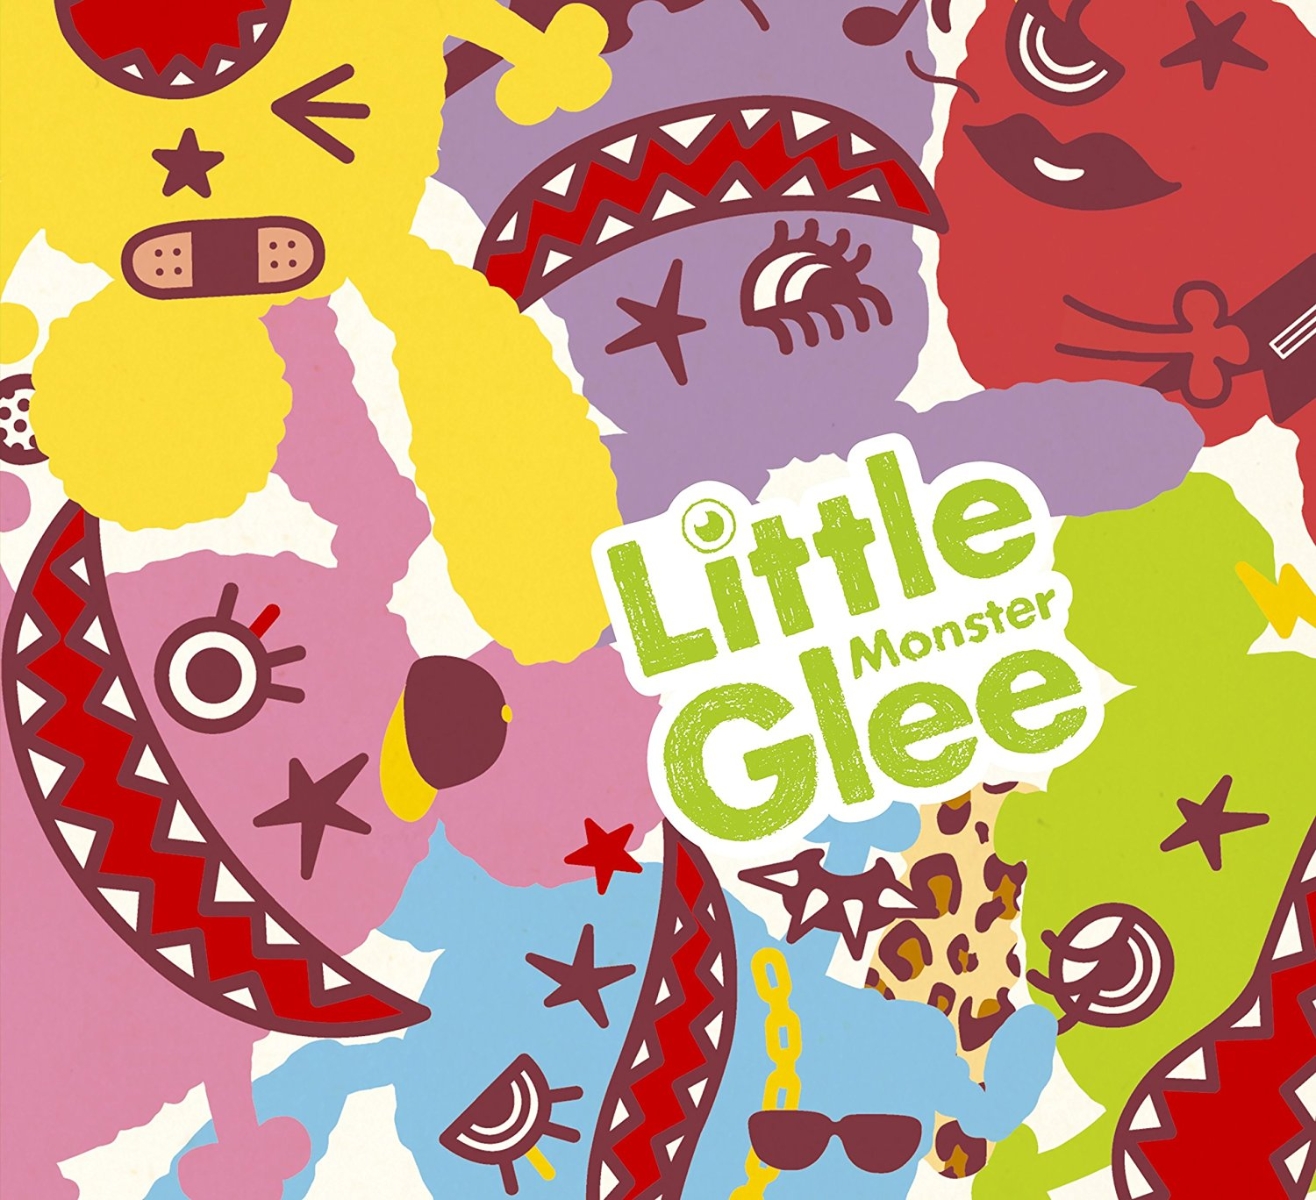 Little Glee Monster画像